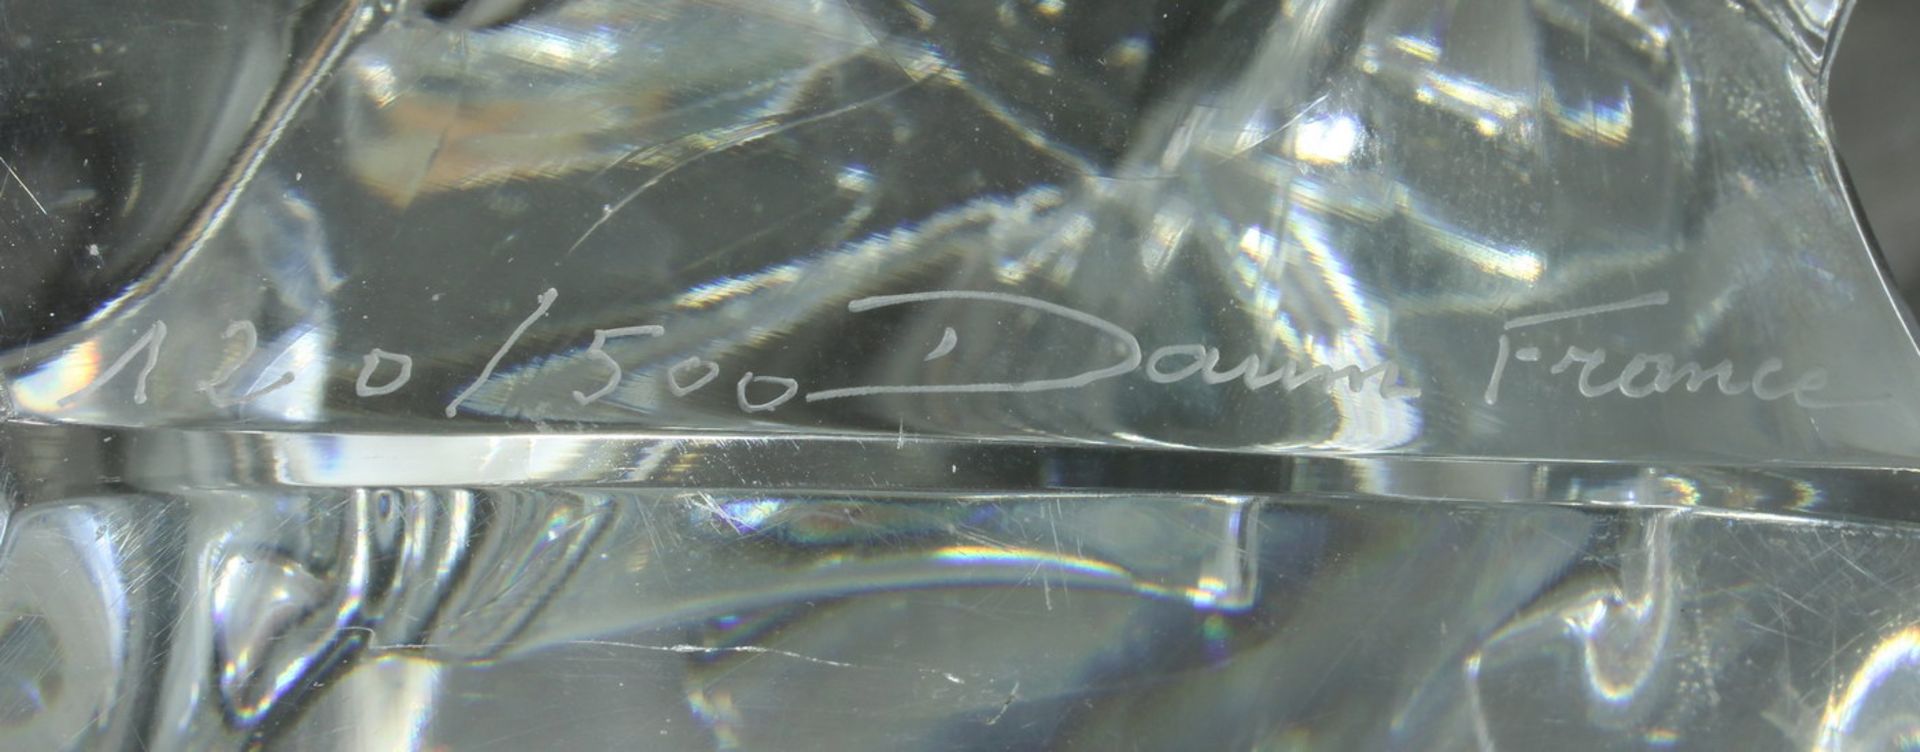 Glasobjekt, "Le poing", Daum, farbloses Glas, bezeichnet Daum Nancy und T. Morgan, nummeriert 120/ - Bild 3 aus 4